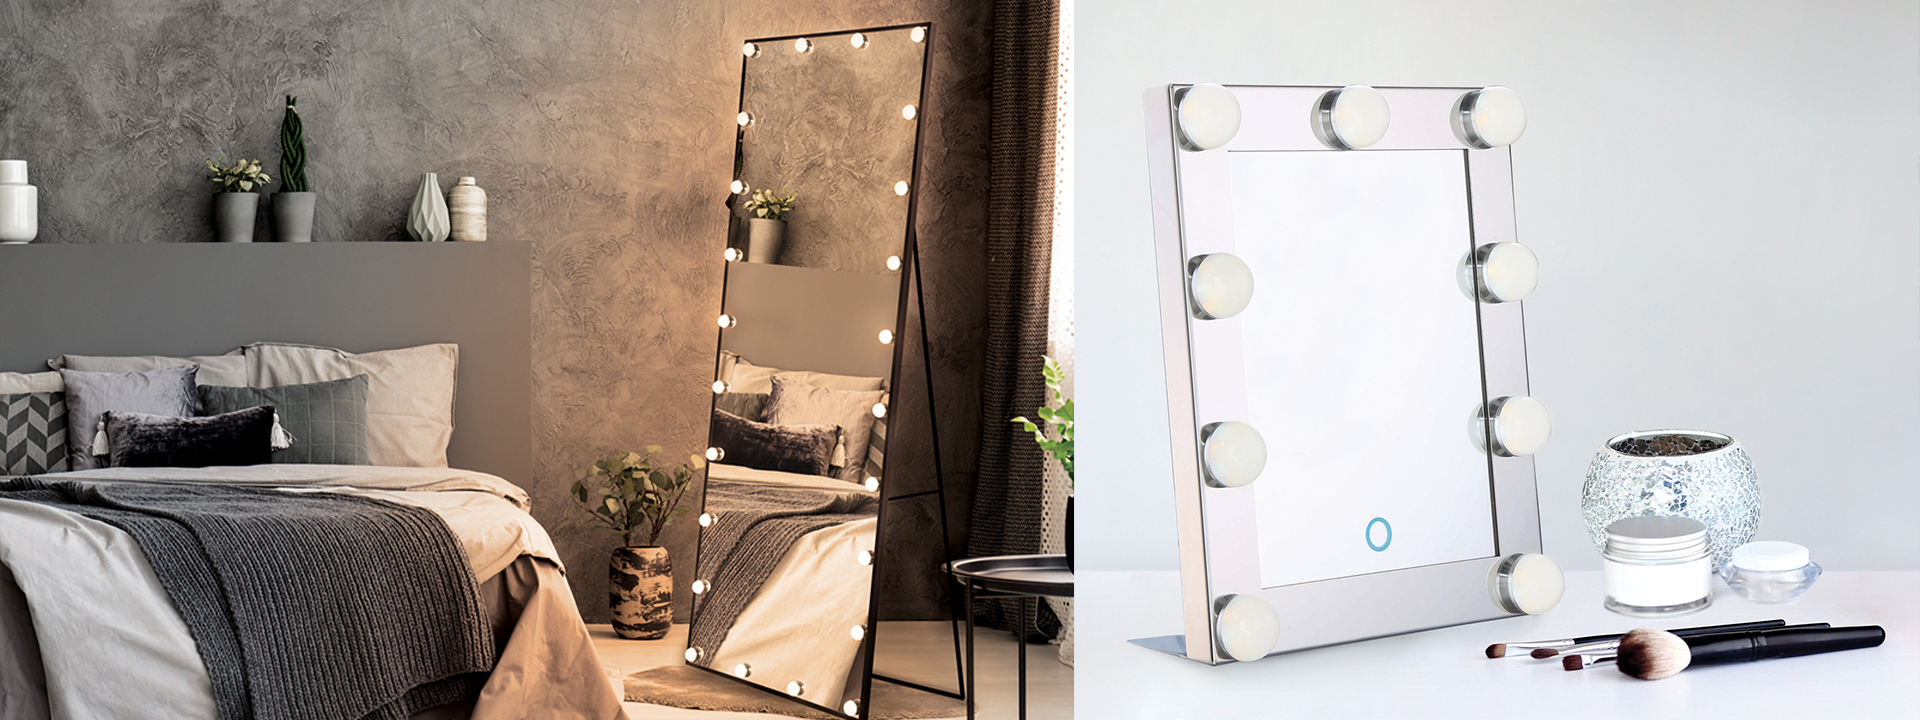 LXFMD European Bathroom Mirror Decorative Mirror Wall Mirror Bed Wall Hanging Makeup mirror-50 50cm Color : Copper